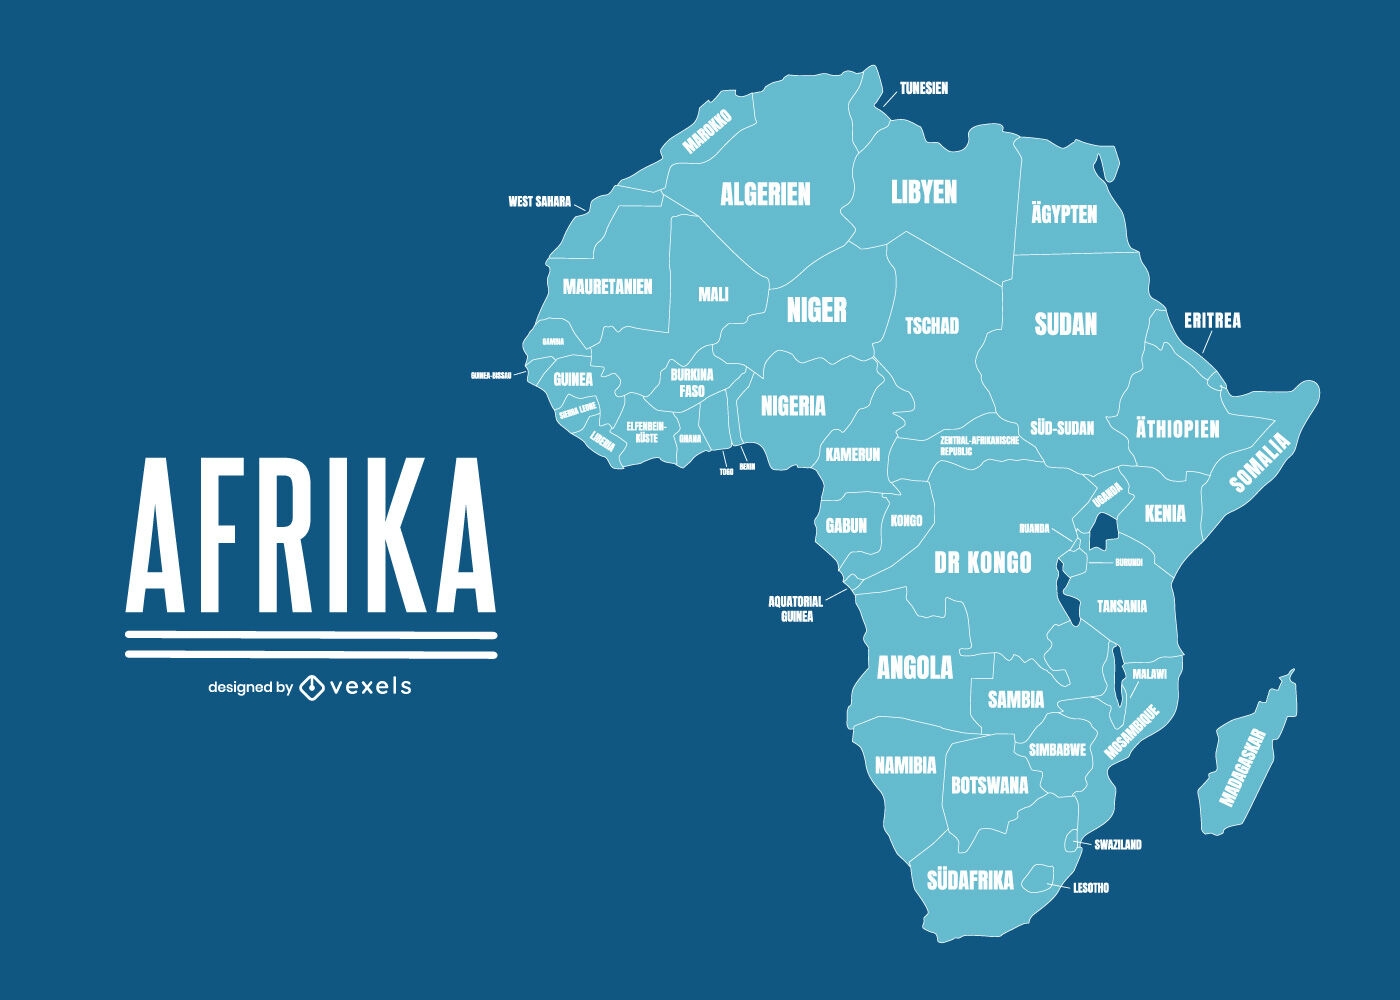 Mapa geográfico de África con nombres de países